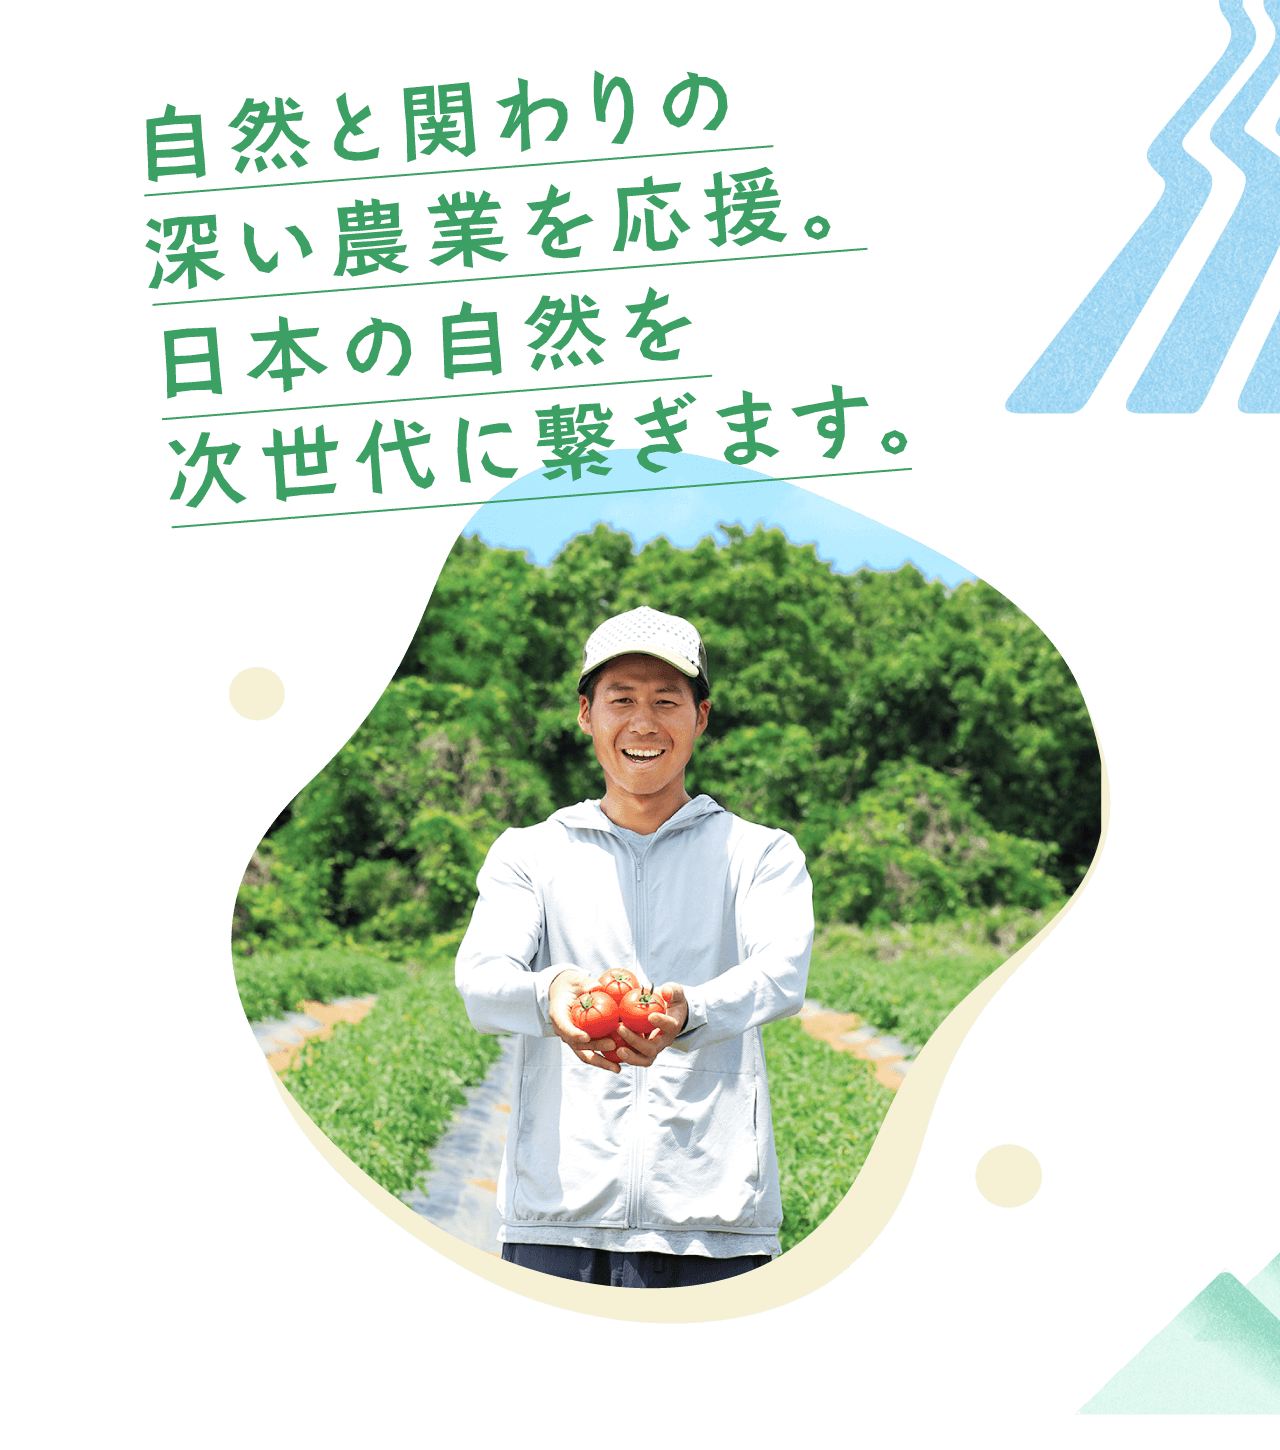 自然と関わりの深い農業を応援。日本の自然を次世代に繋ぎます。